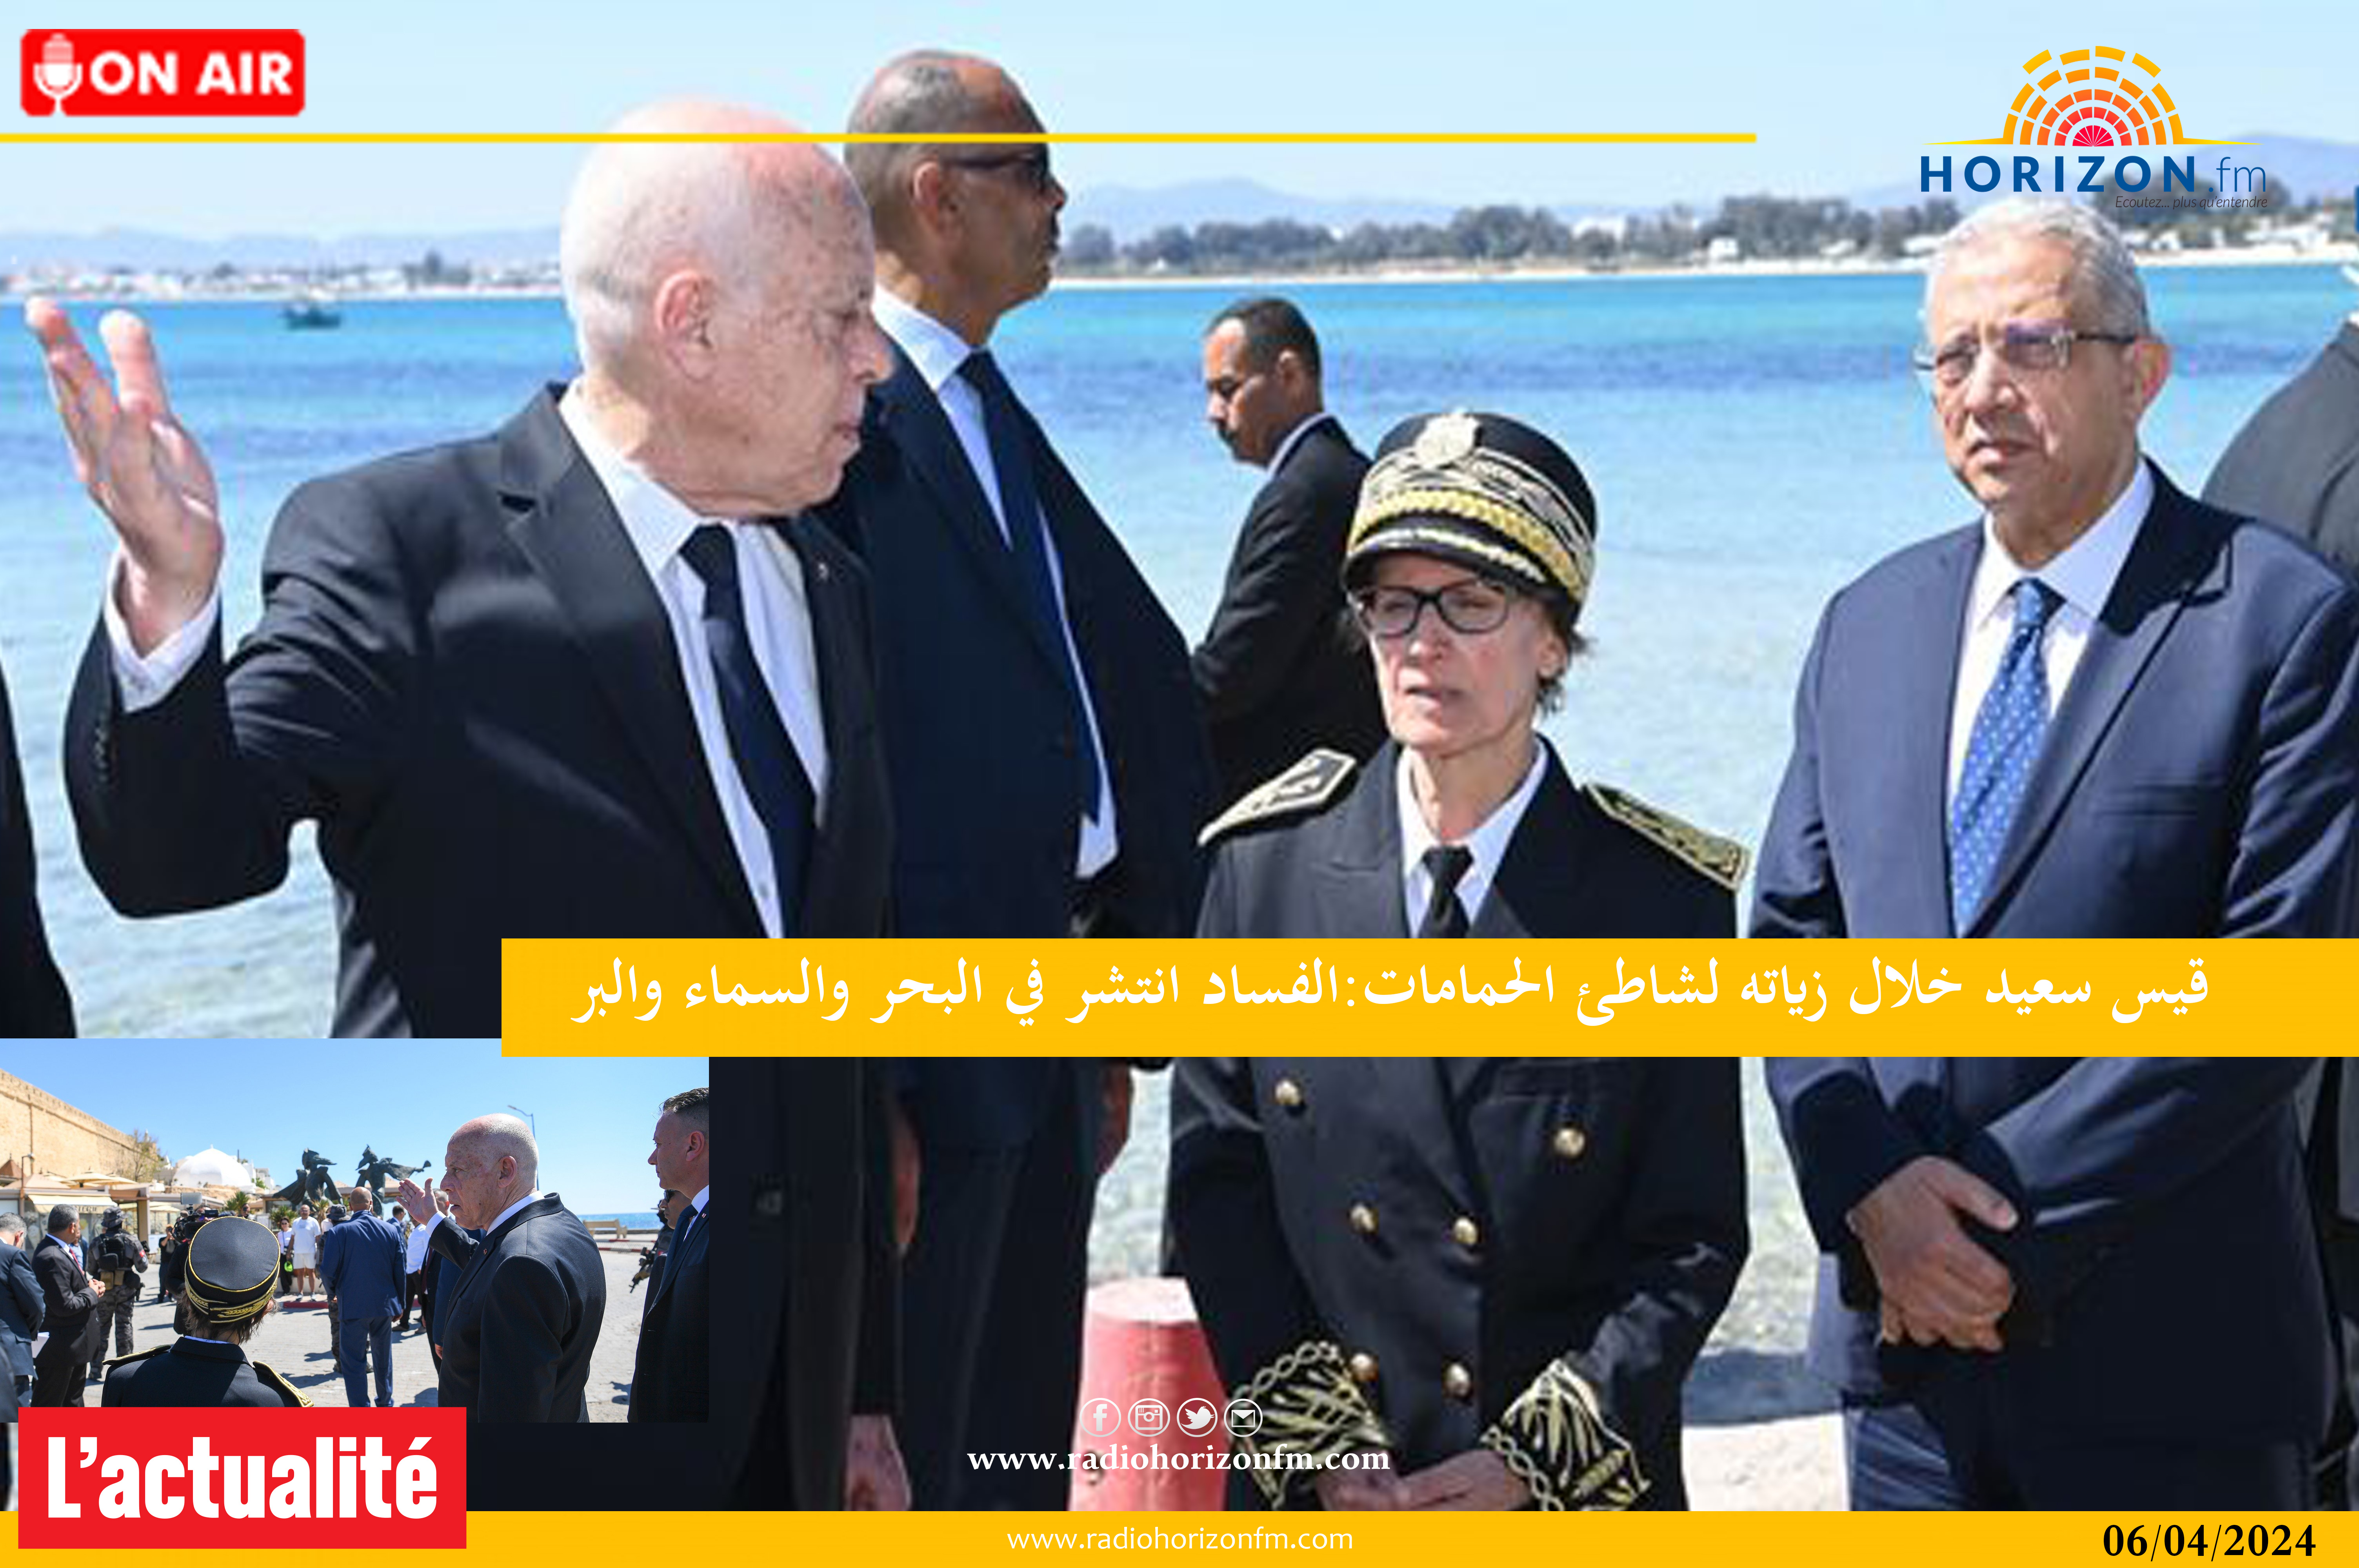 رئيس الجمهورية قيس سعيّد في زيارة غير معلنة إلى مدينة الحمامات